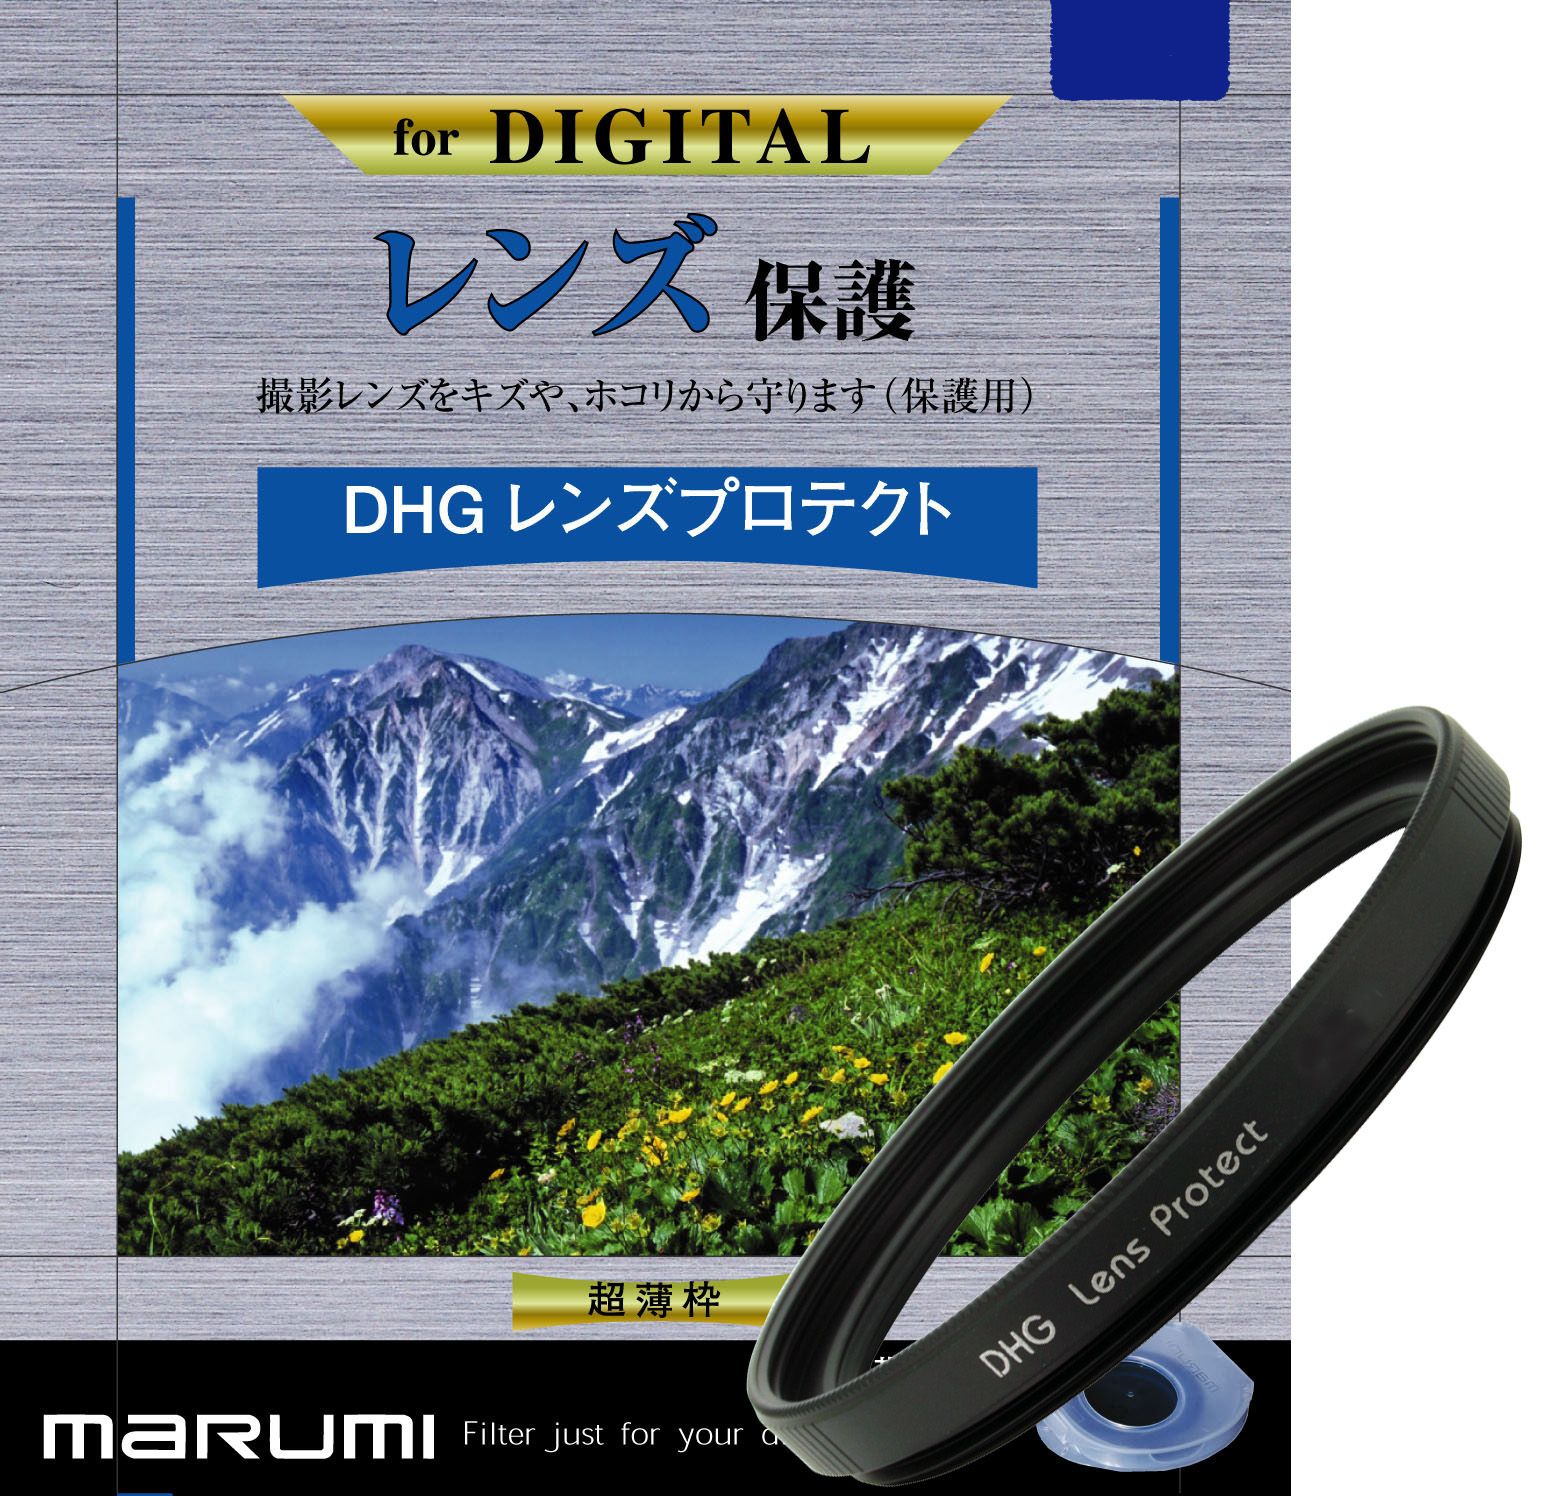 マルミ  DHG レンズプロテクト 77mm [プロテクター] MARUMI